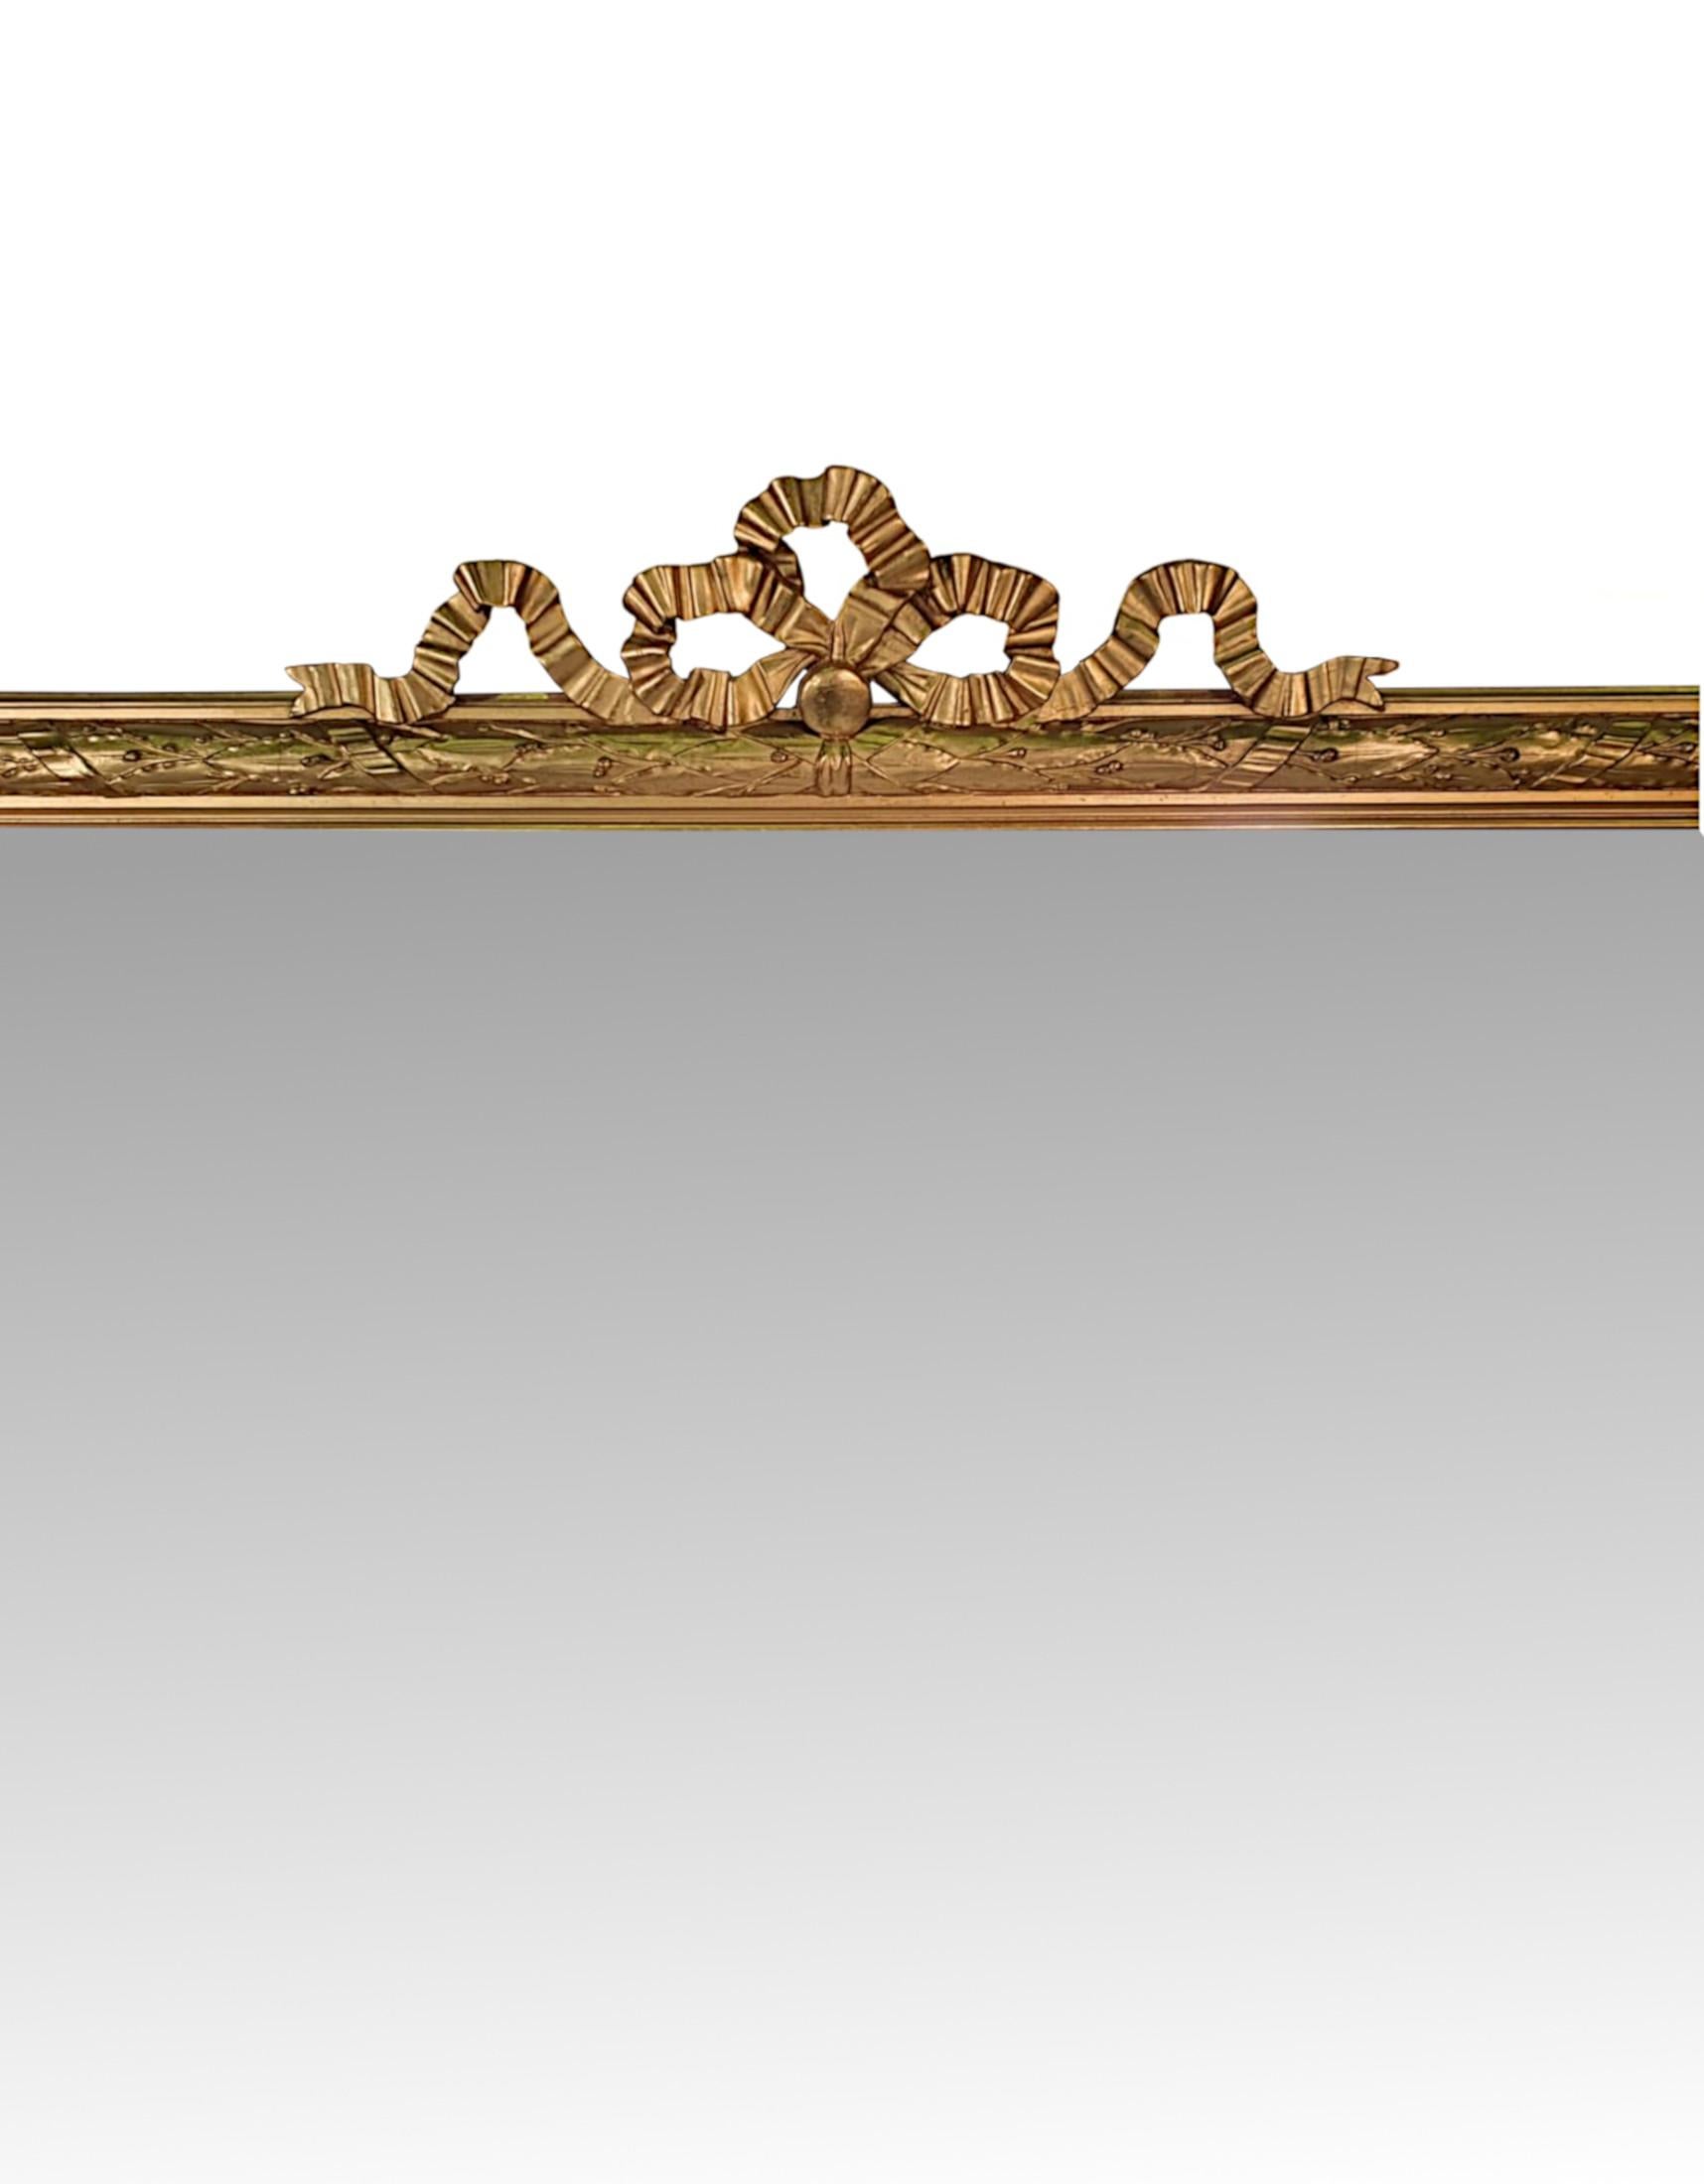 Superbe miroir d'entrée ou de dressing en bois doré du XIXe siècle, de grandes proportions. La plaque de miroir en verre de forme rectangulaire est placée dans un cadre en bois doré moulé avec de beaux détails en guirlande de lin, feuilles